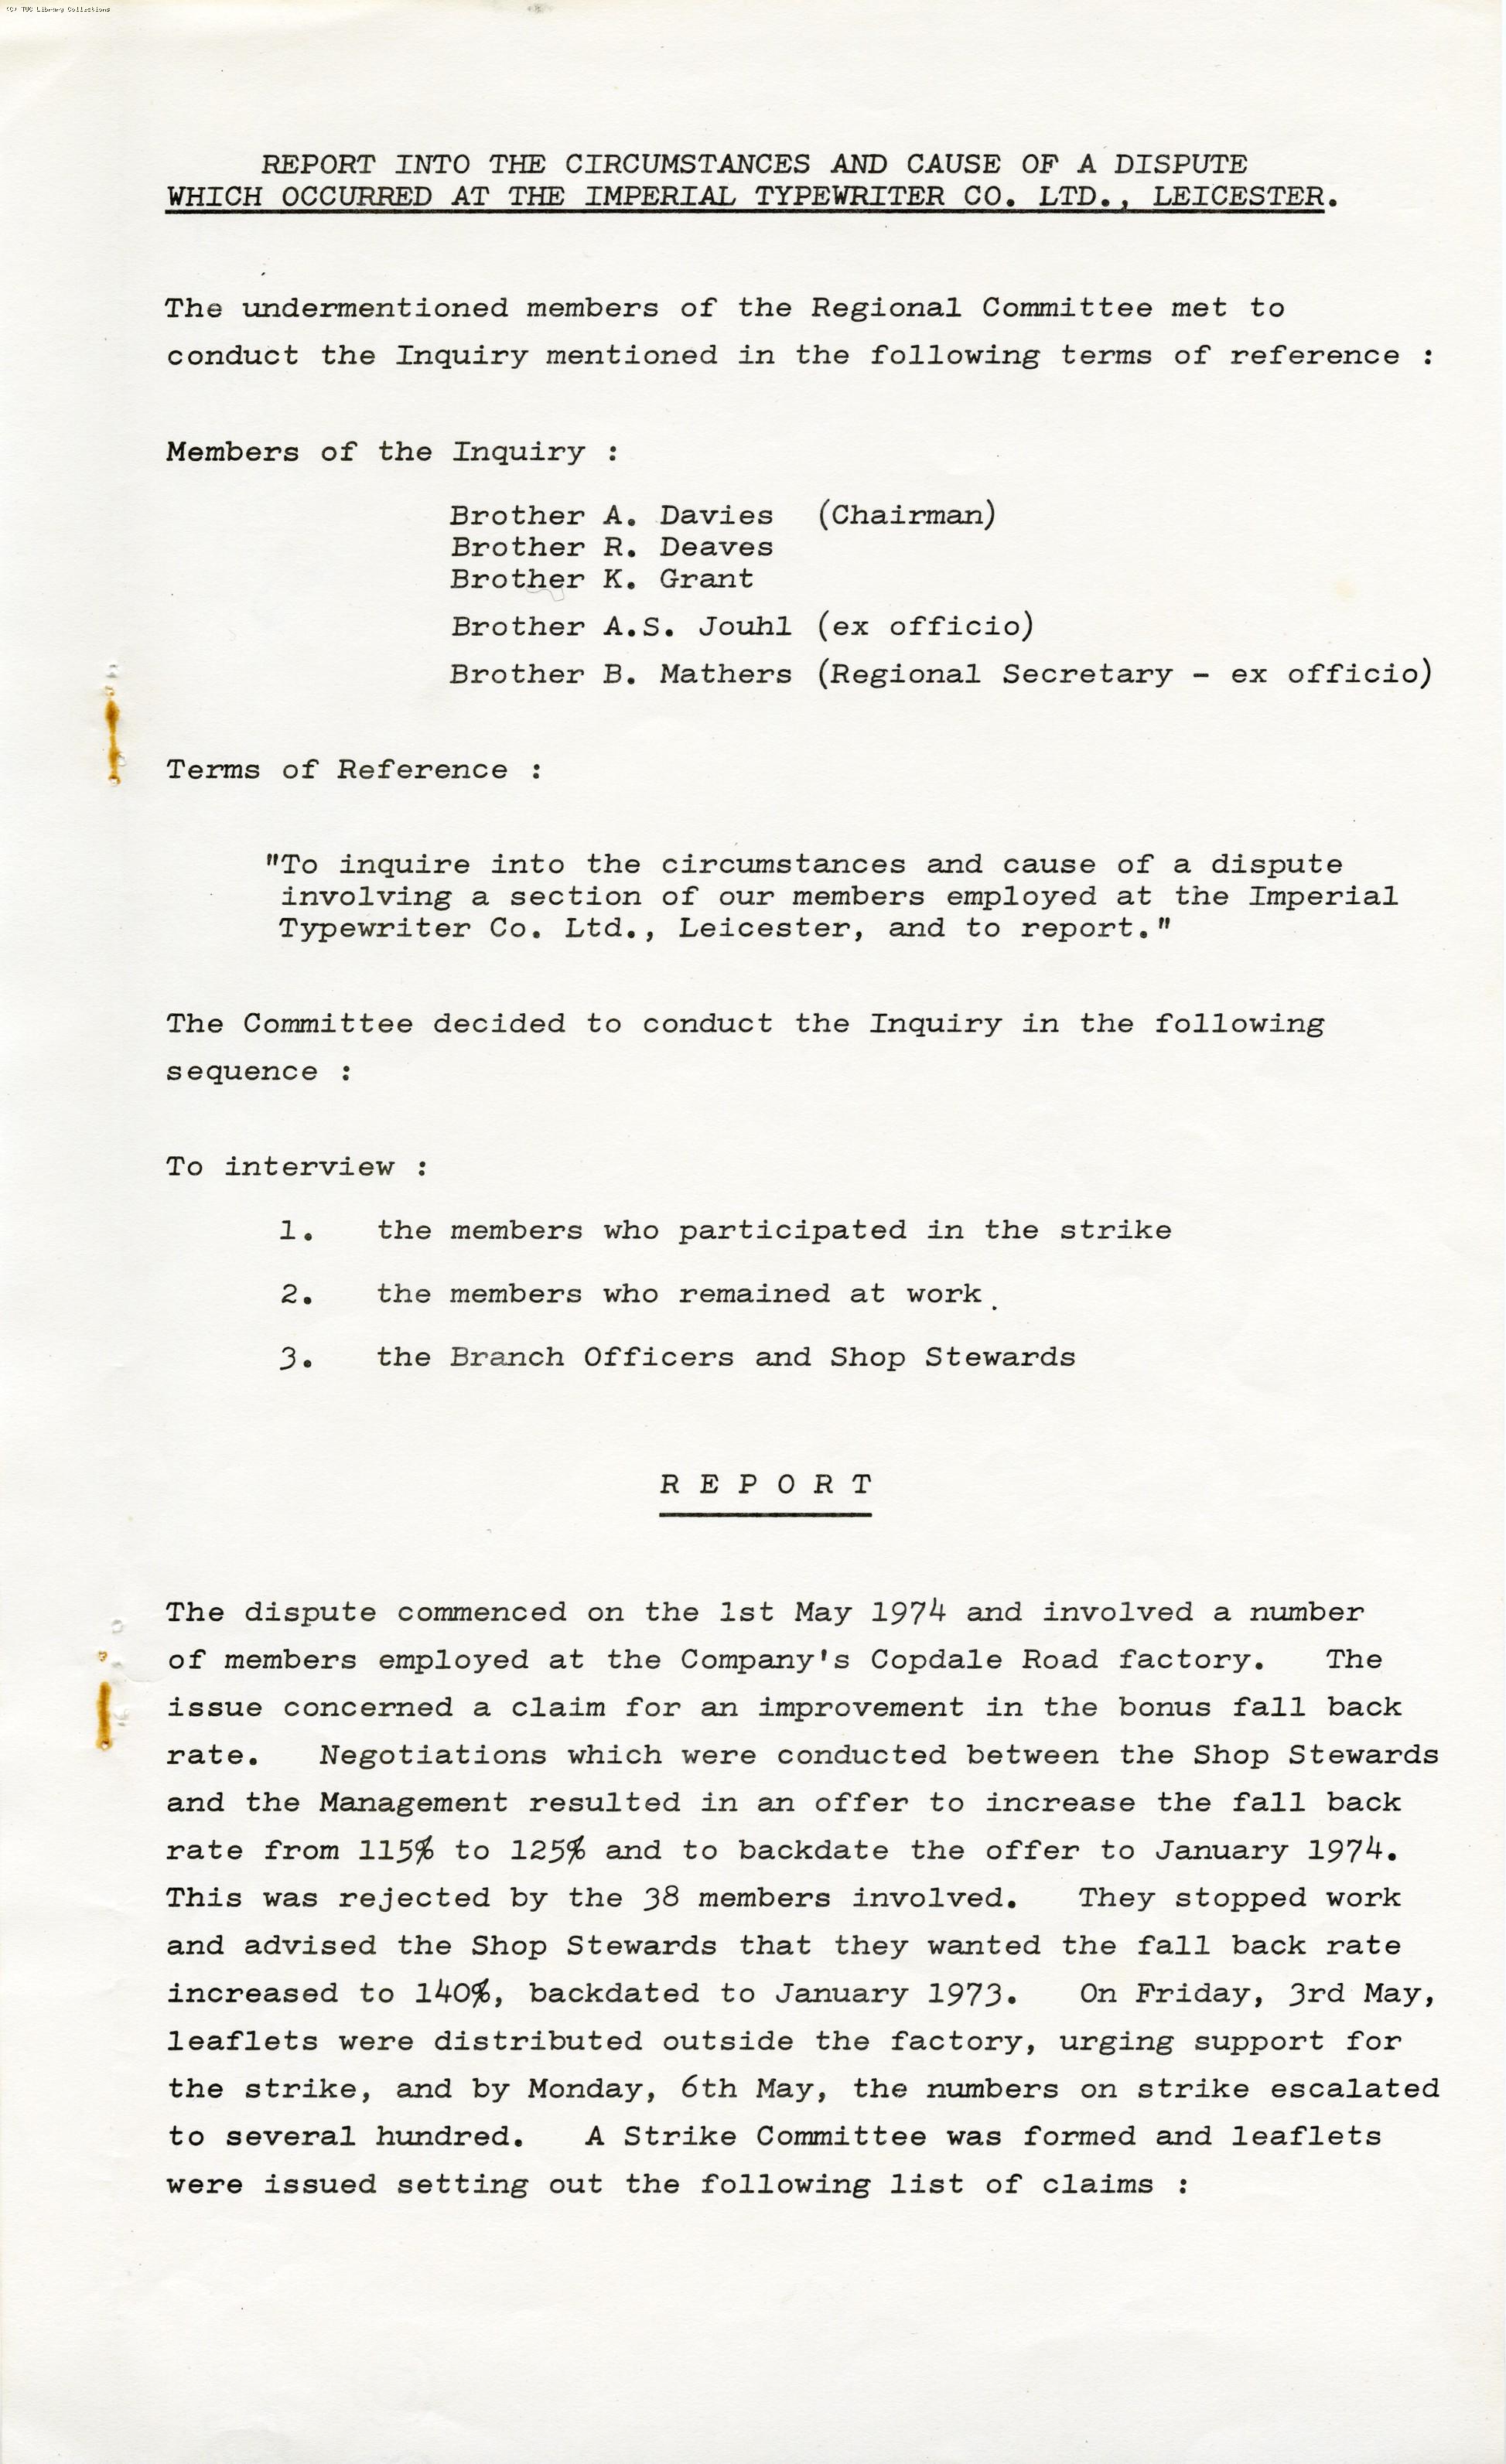 Imperial Typewriters dispute, 1974